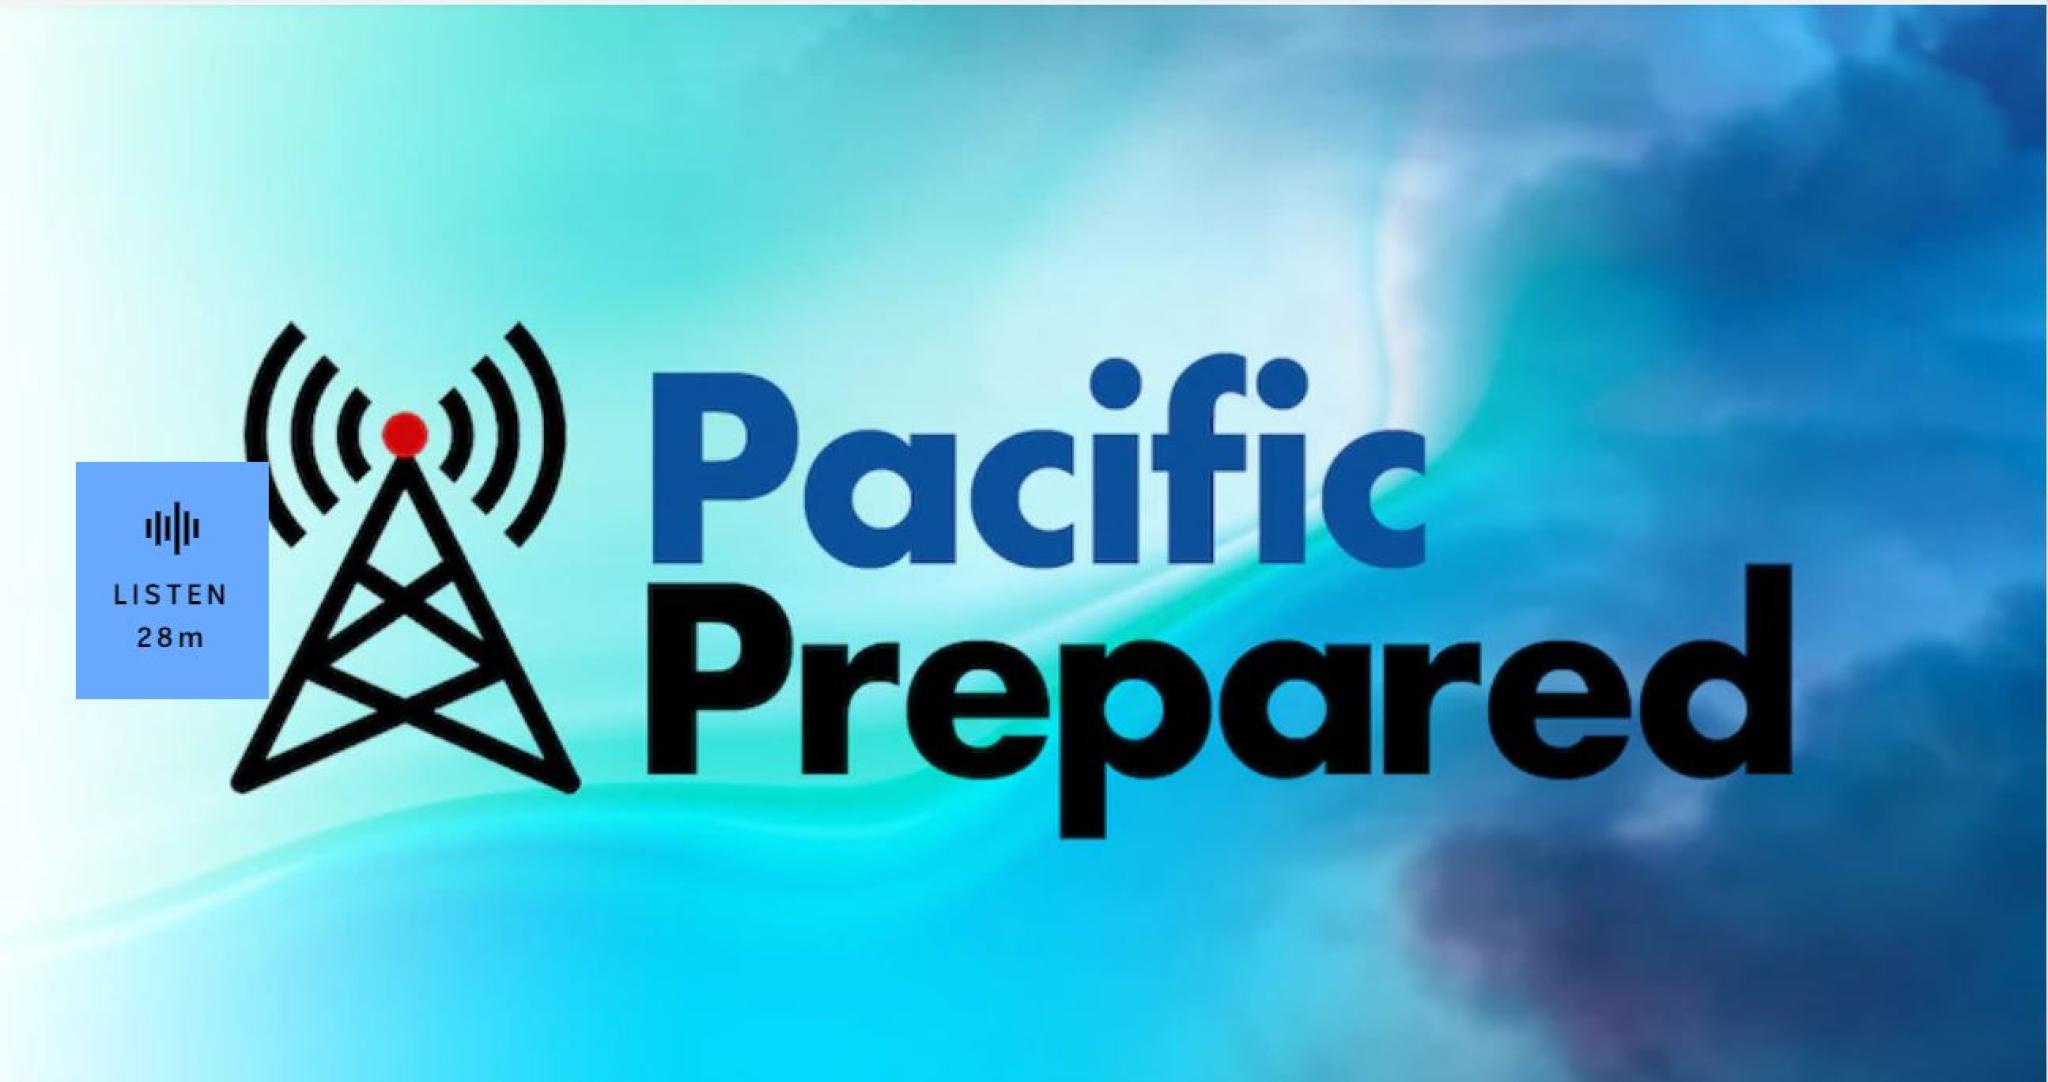 ABC Radio: Pacific Prepared